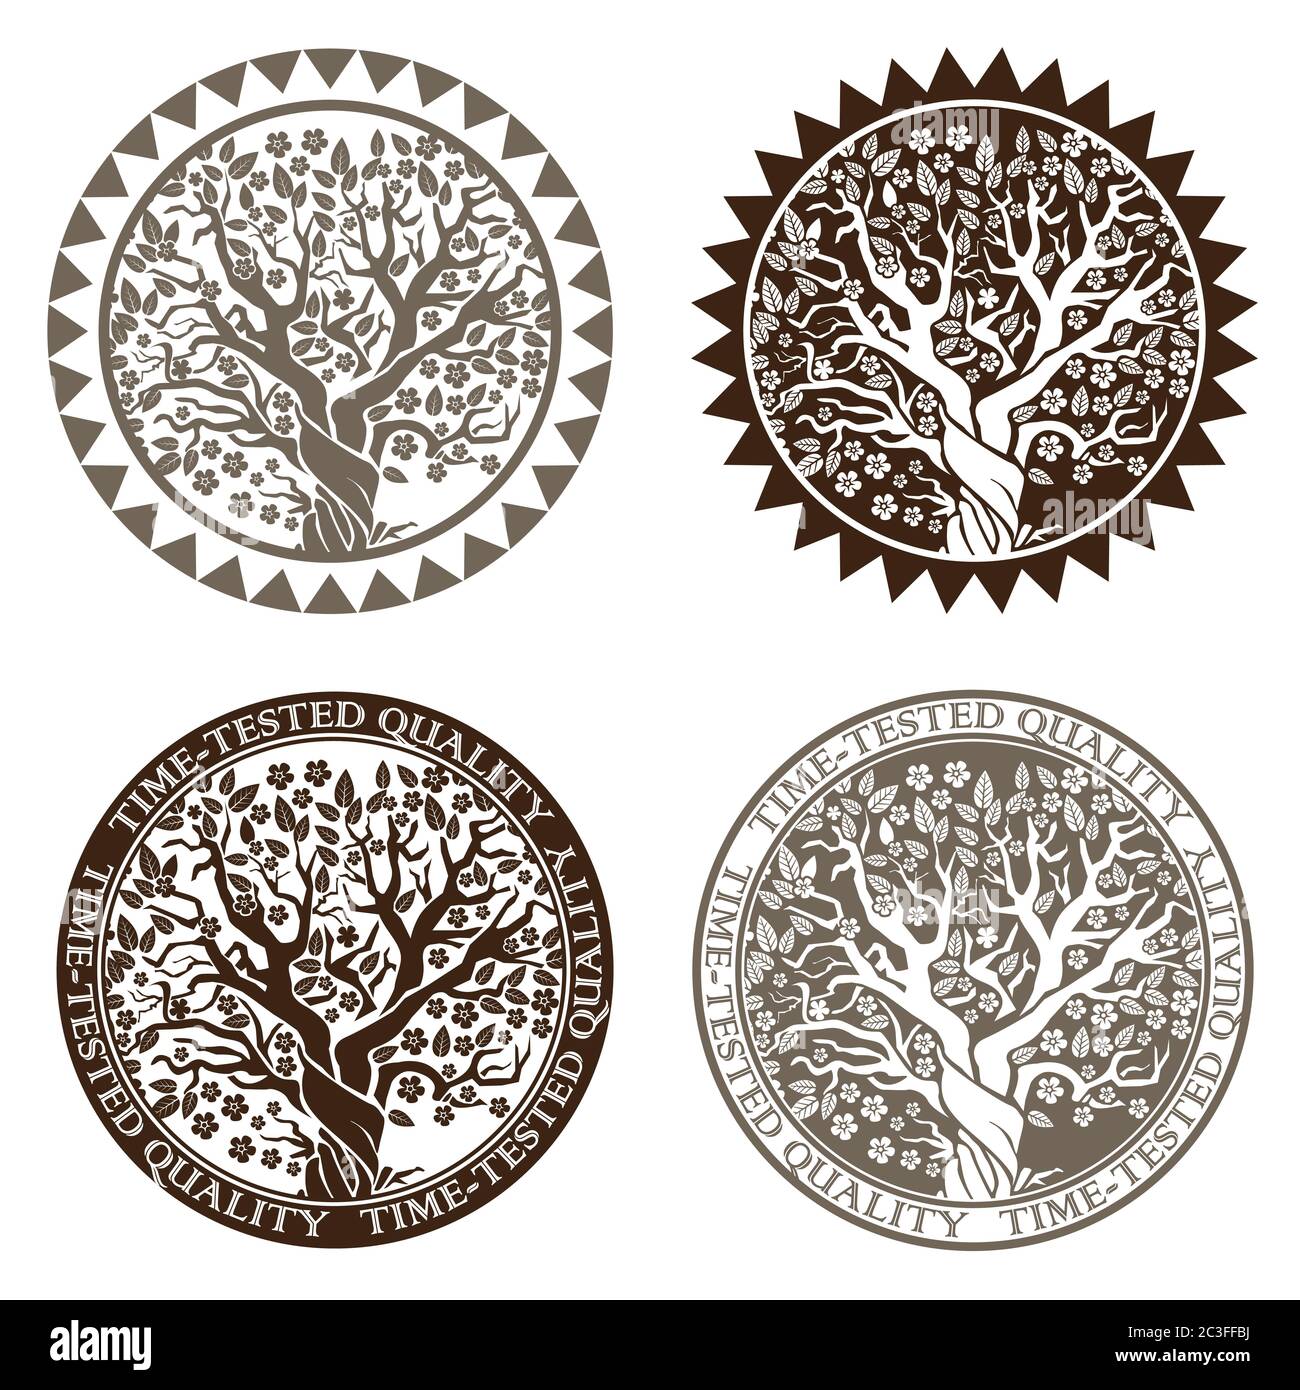 Stilisierte Vektordarstellung. Symbol oder Stempel blühenden Baum symbolisiert Wohlstand und Qualität im Laufe der Jahre bewiesen Stock Vektor